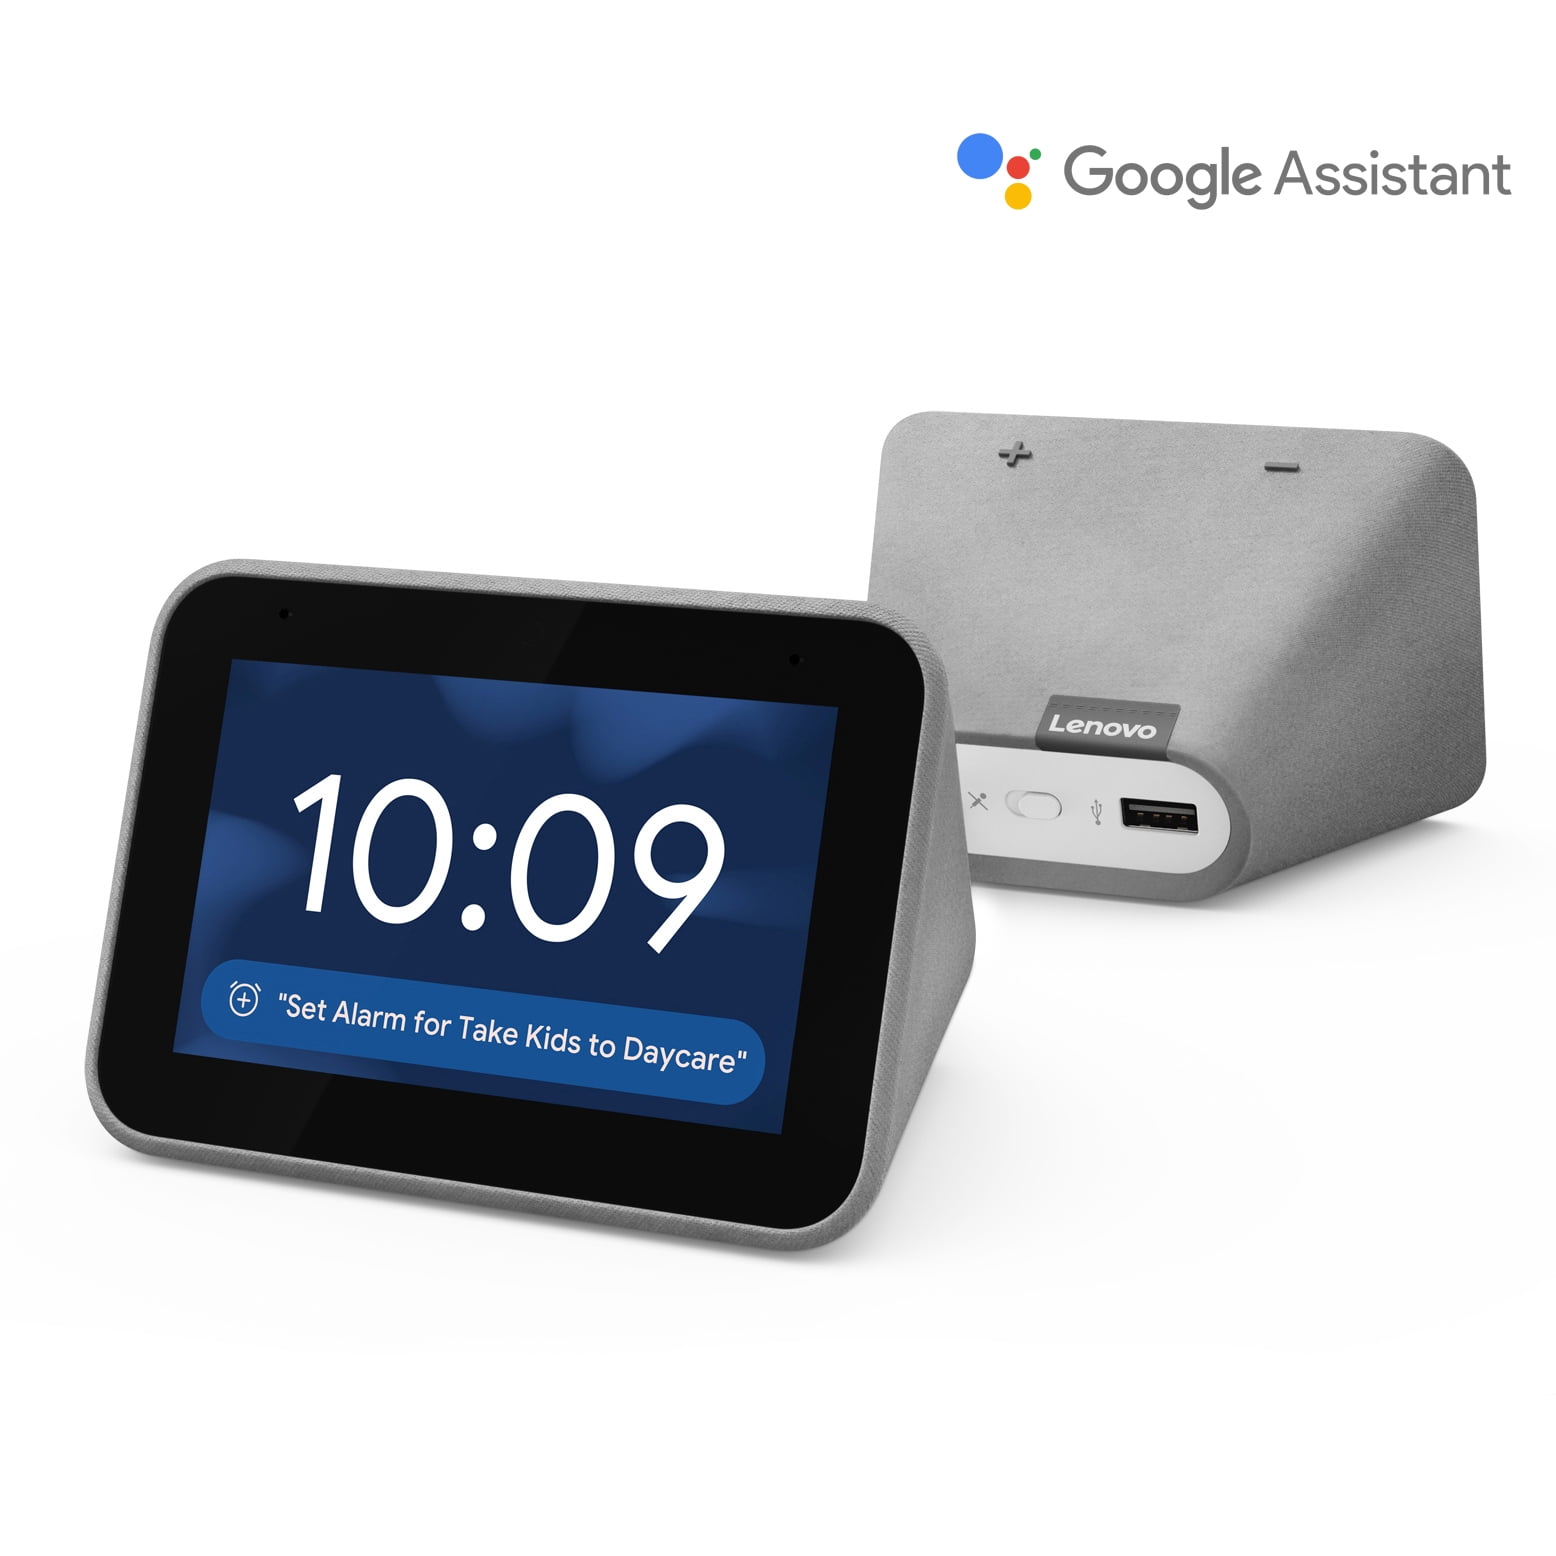 Promo - Le réveil connecté Lenovo Smart Clock Essential à seulement 19,99€  - CNET France